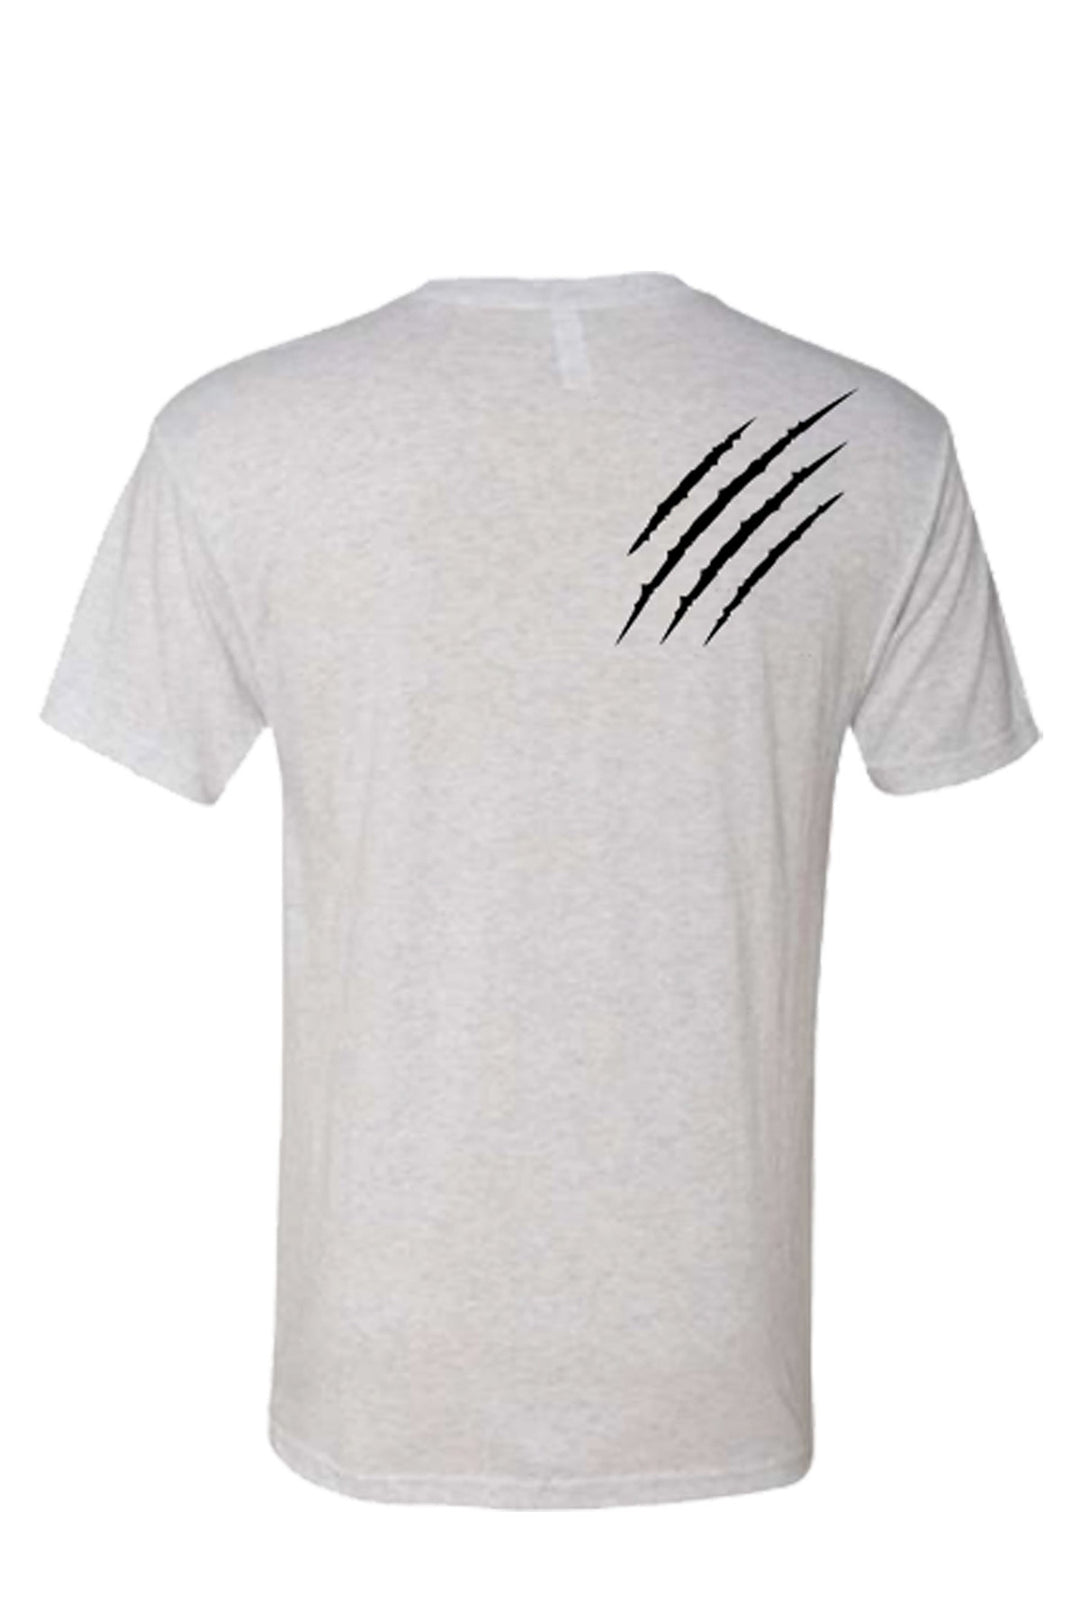 Unisex Triblend T-Shirt - Scratch